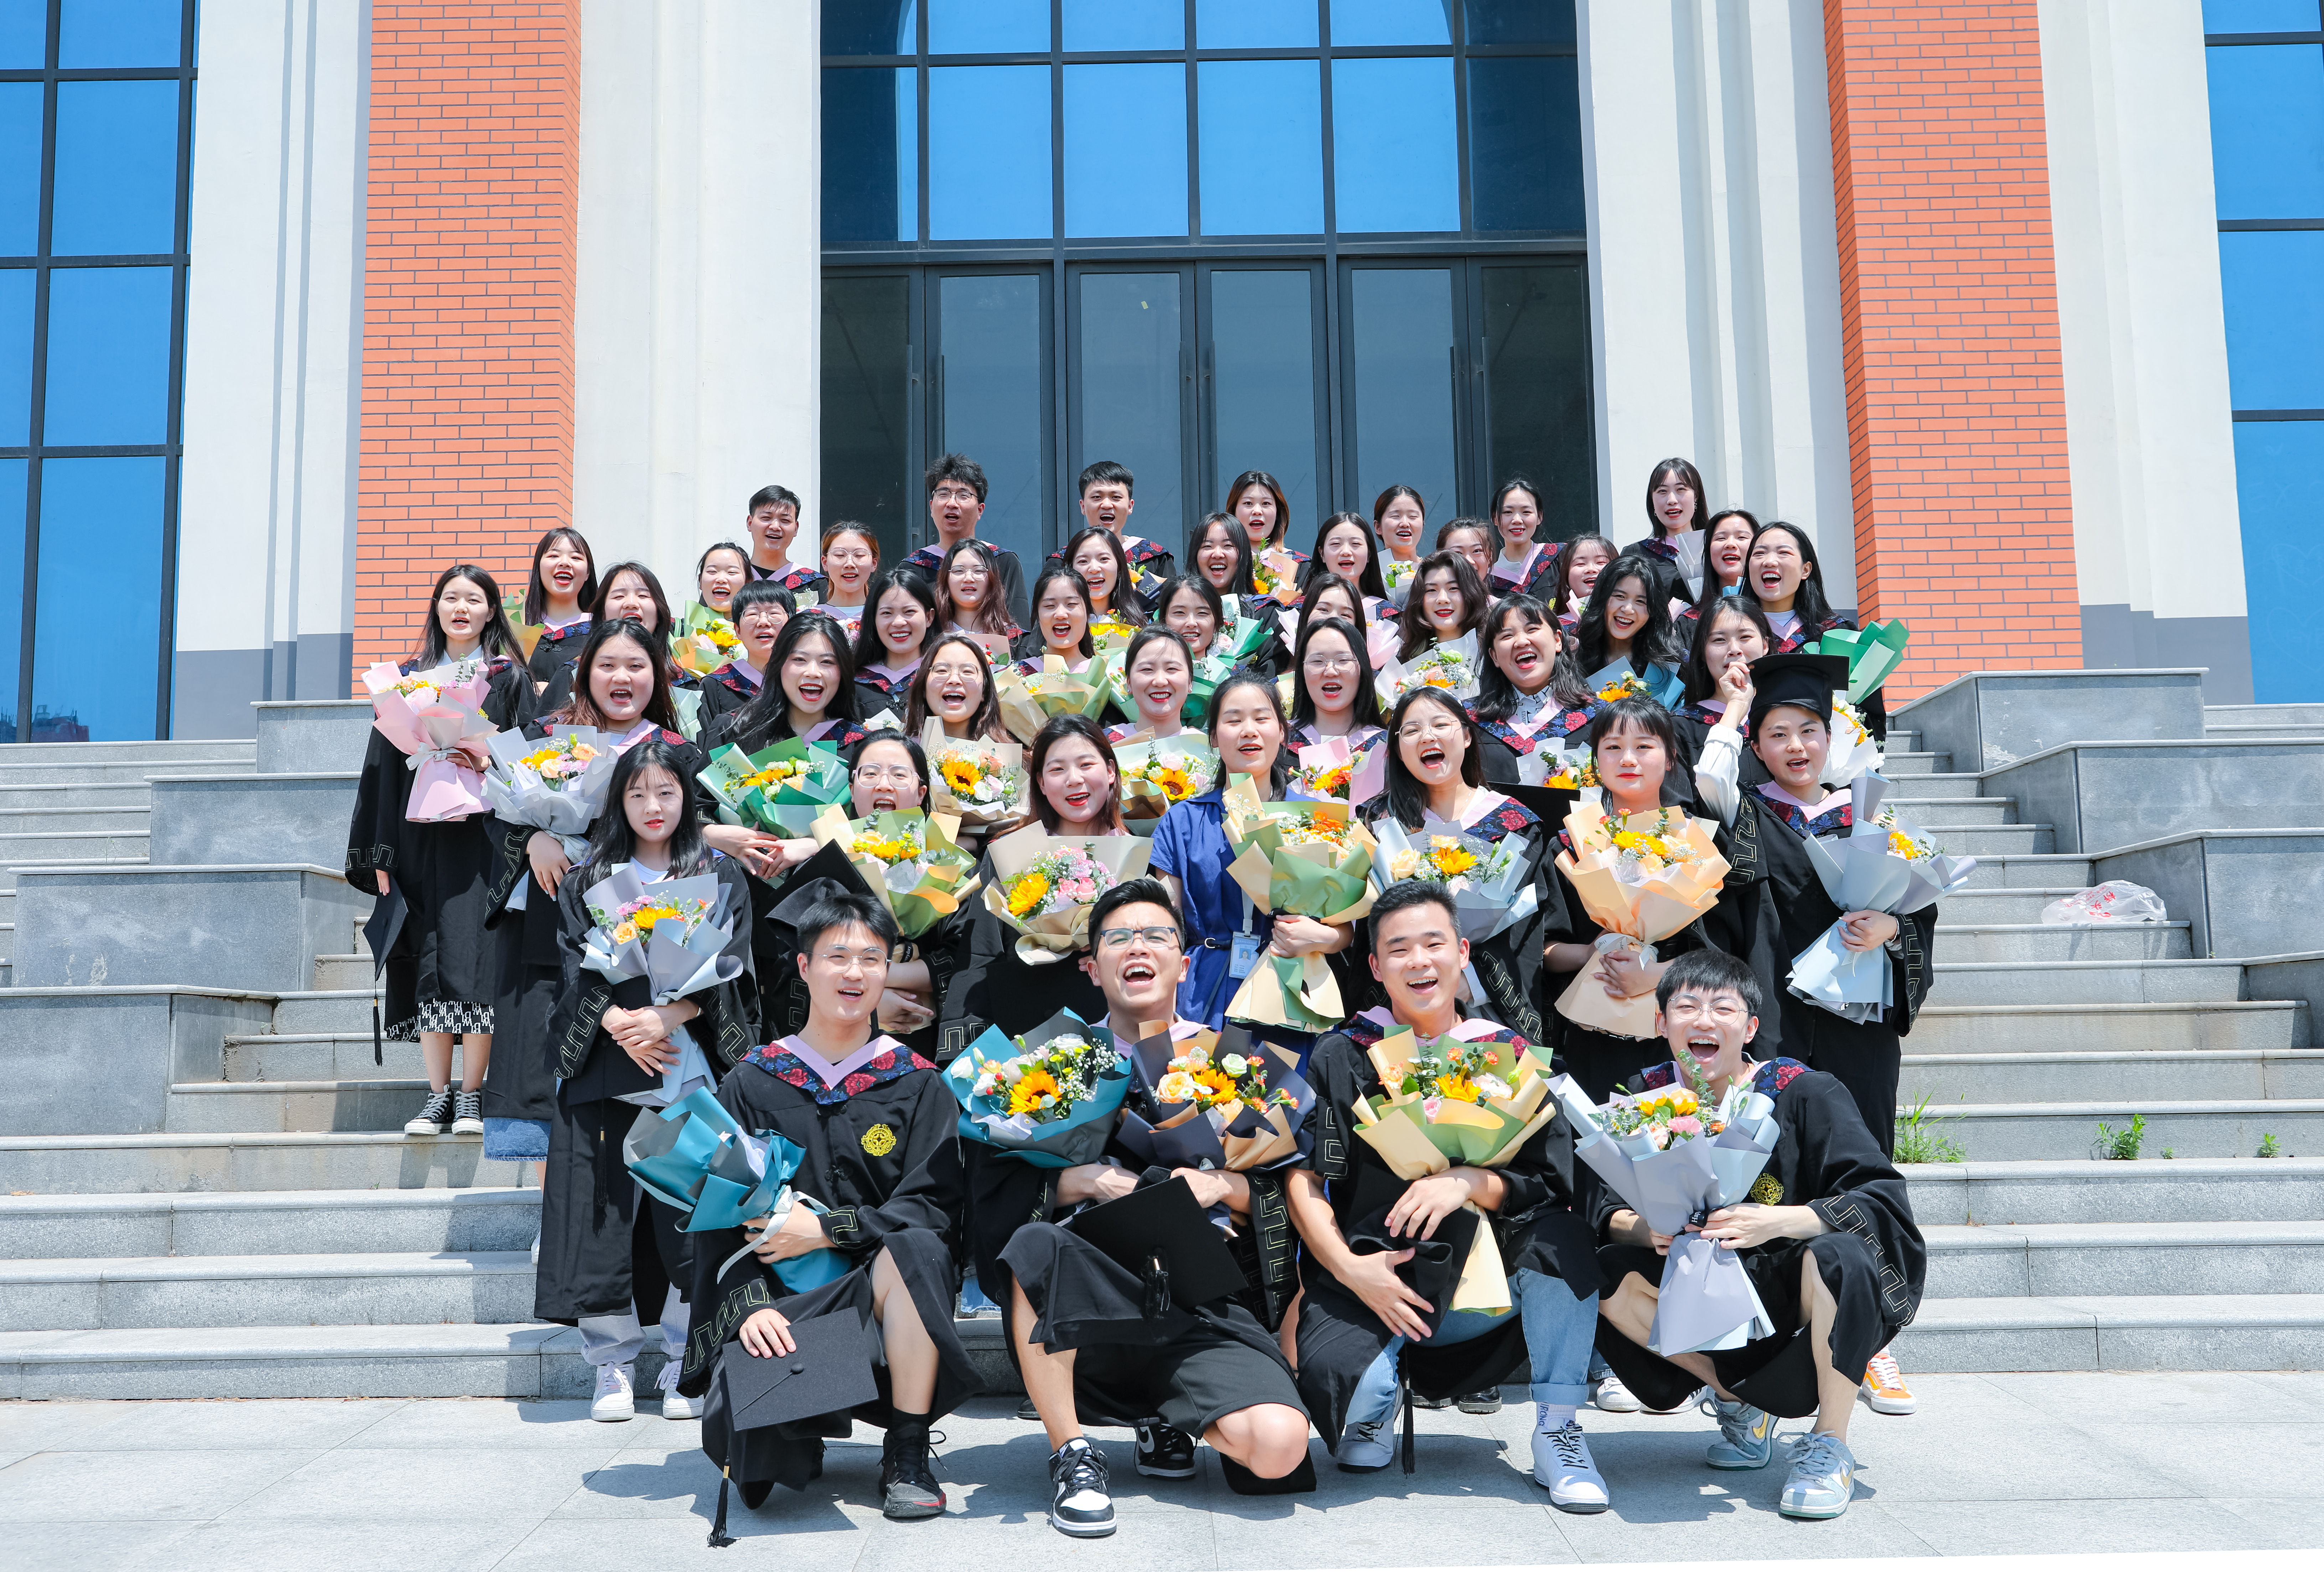 郑州高校一班长自费给全班50名同学送花：不想再留下遗憾，想给同学们一些仪式感